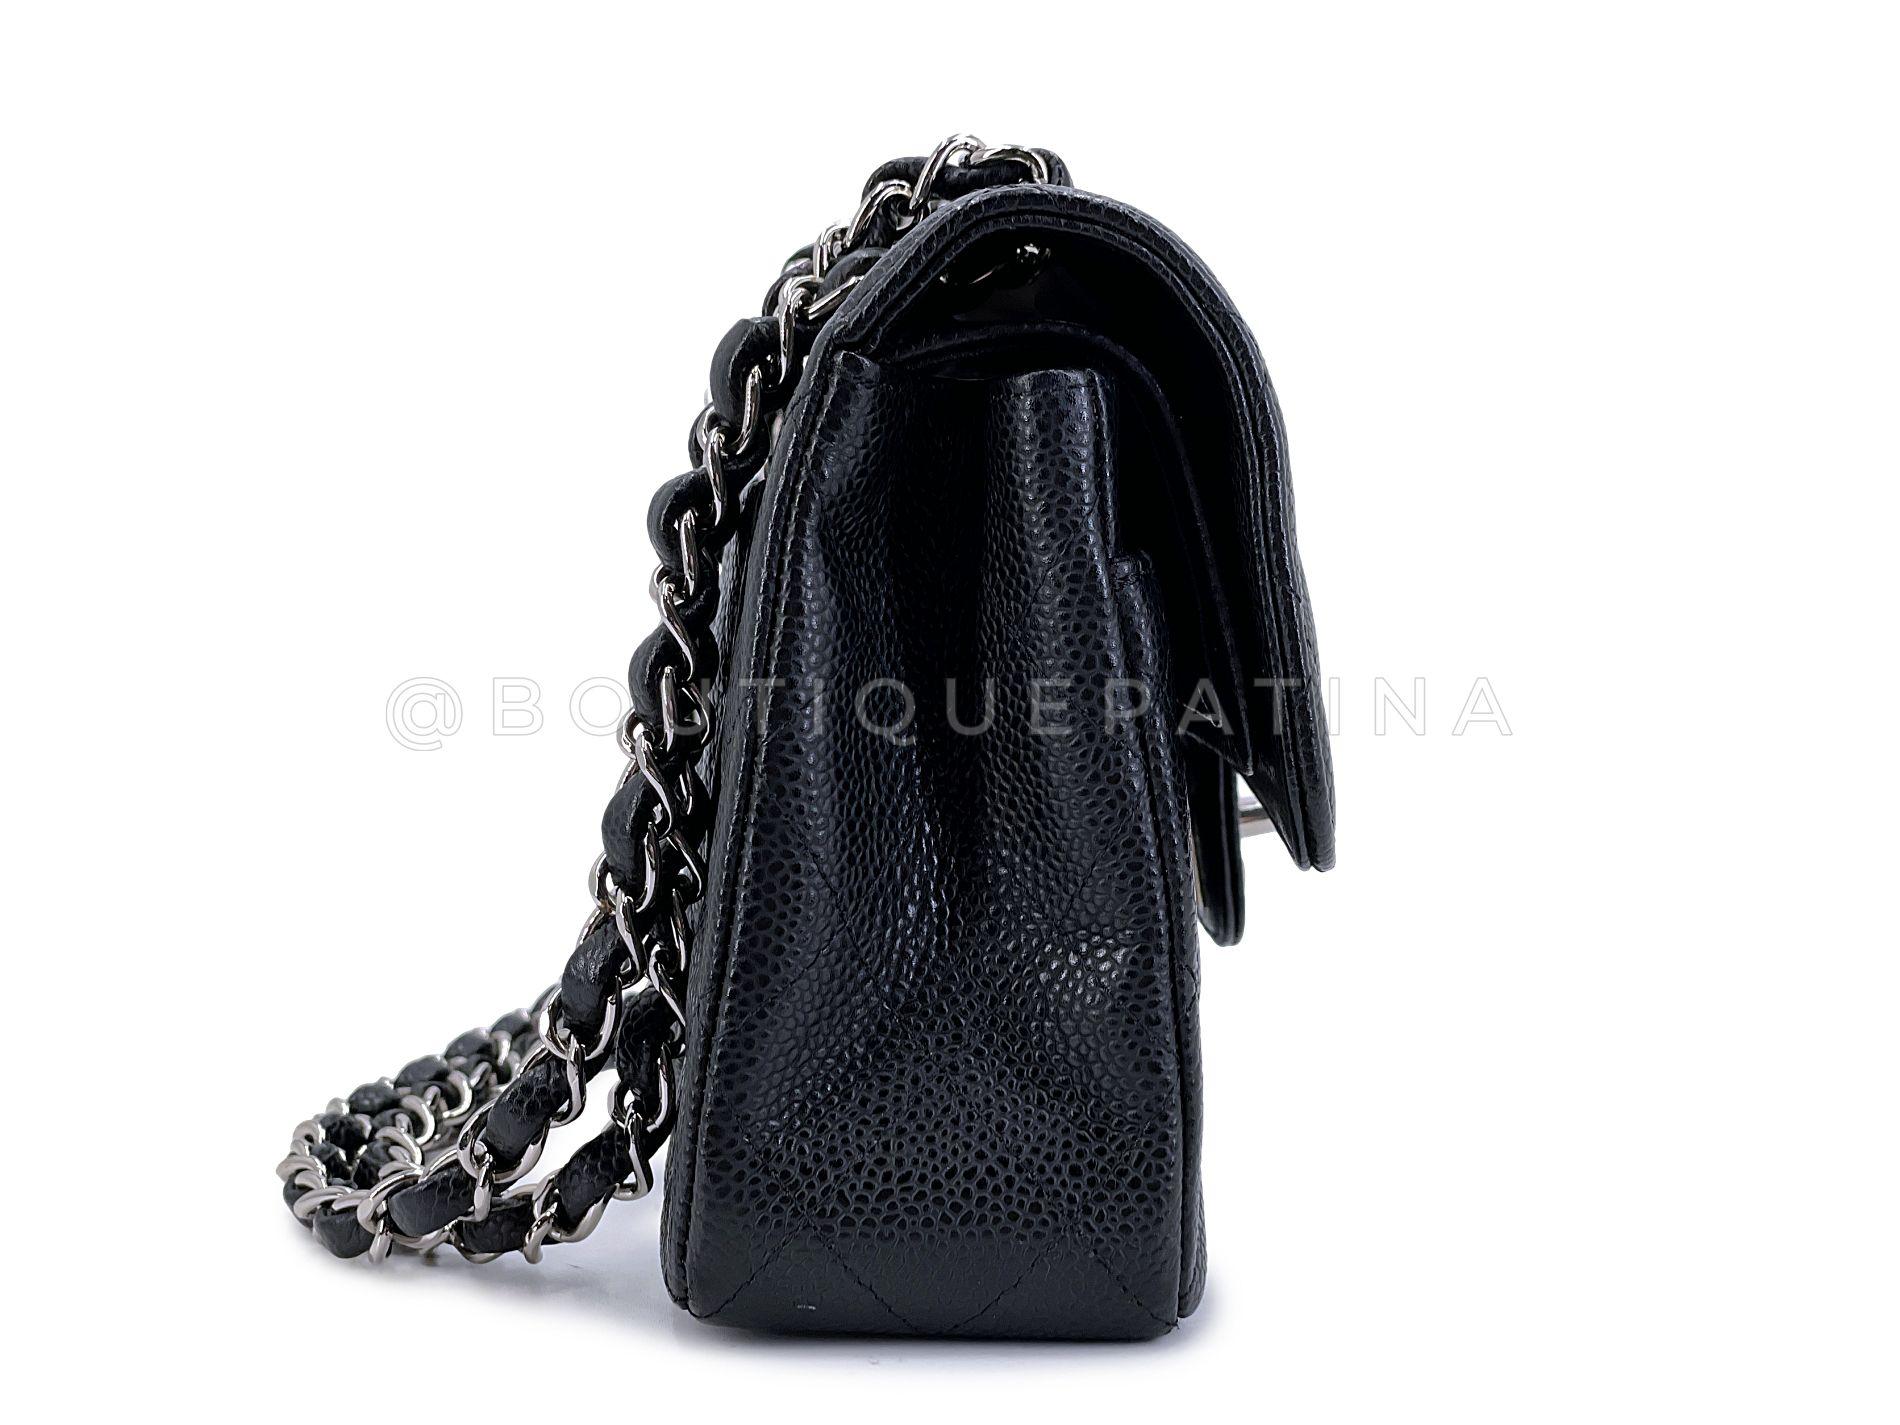 Chanel Black Caviar Small Classic Double Flap Bag SHW 67981 Pour femmes en vente